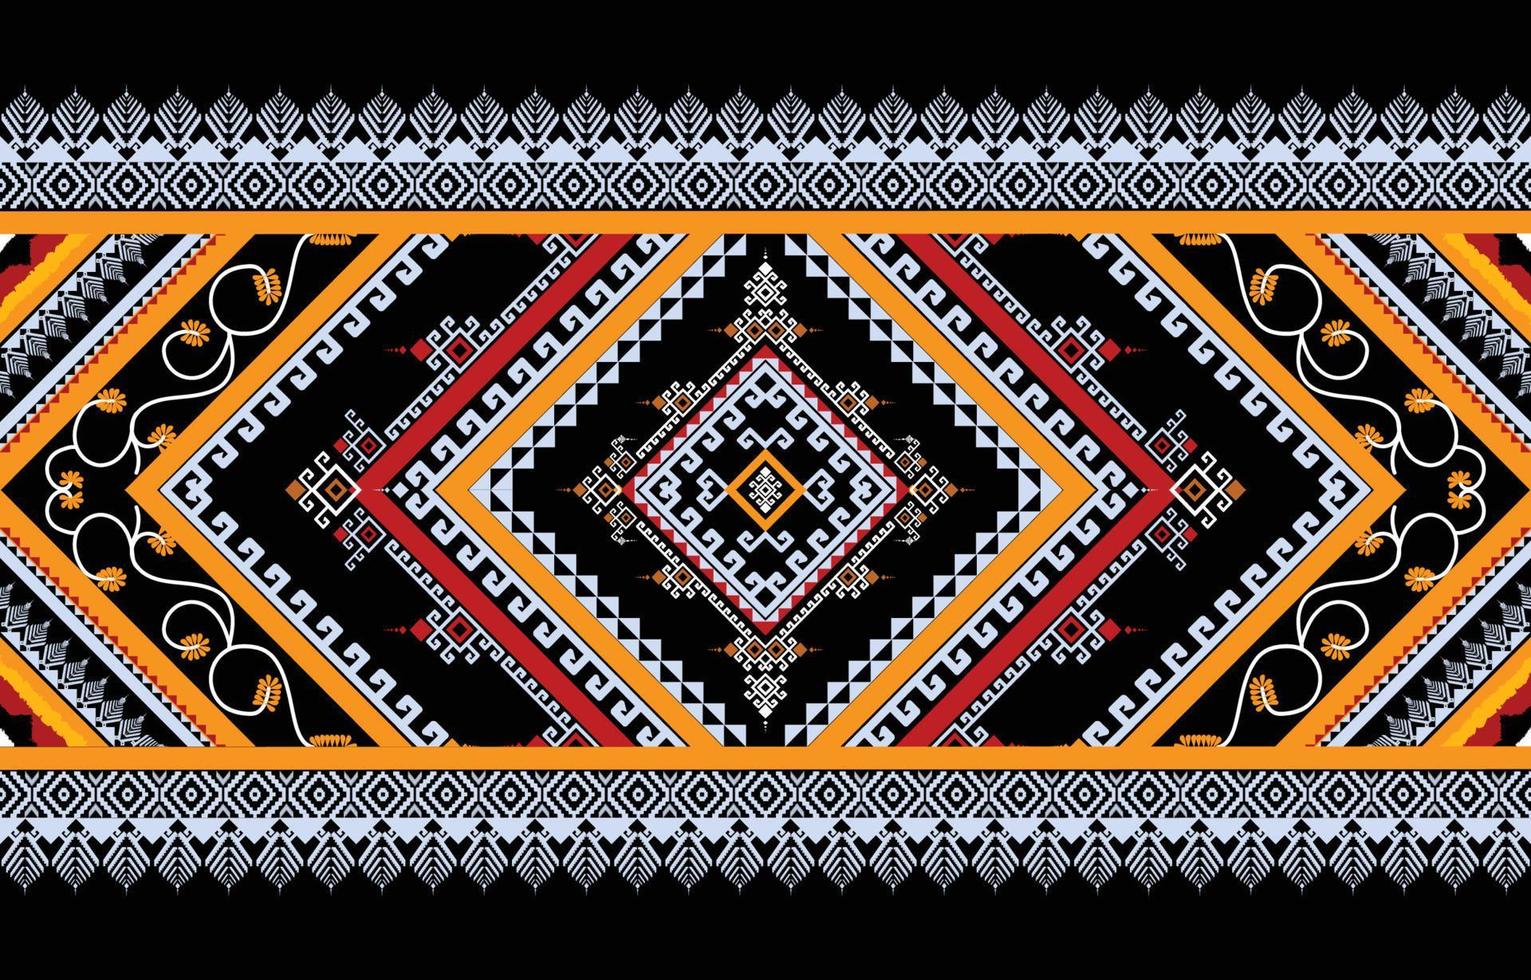 abstrakt etnisk geometrisk sömlös mönster vektor. afrikansk arab amerikan aztec motiv mönster. vektor element designad för bakgrund, tapet, skriva ut, omslag, kakel, tyg mönster. vektor mönster.